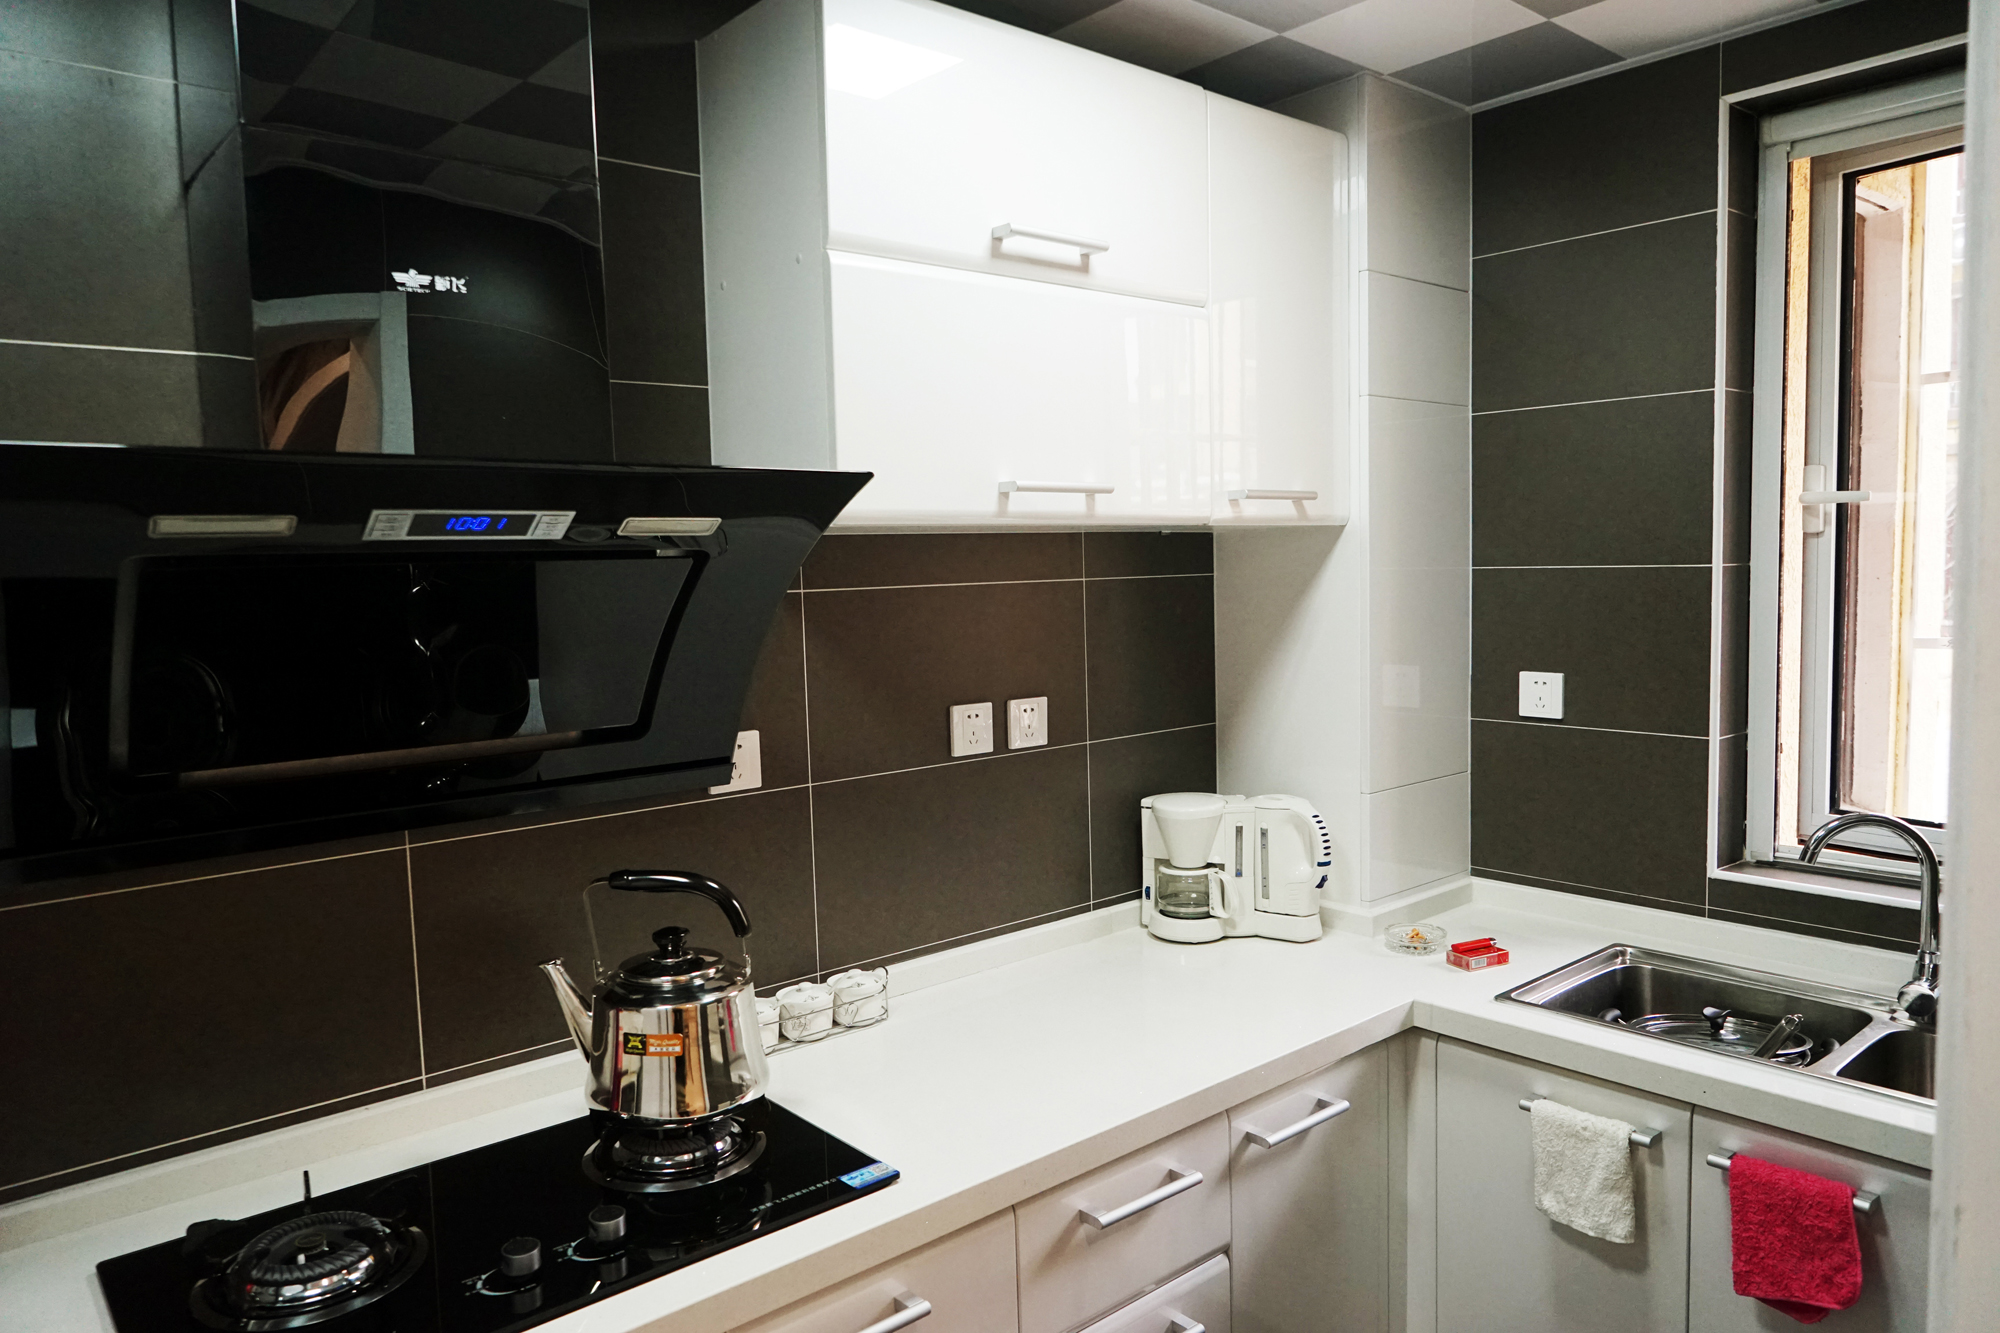 简约 现代 黑白灰 造型顶 吧台 厨房图片来自253886347在光之谷的分享